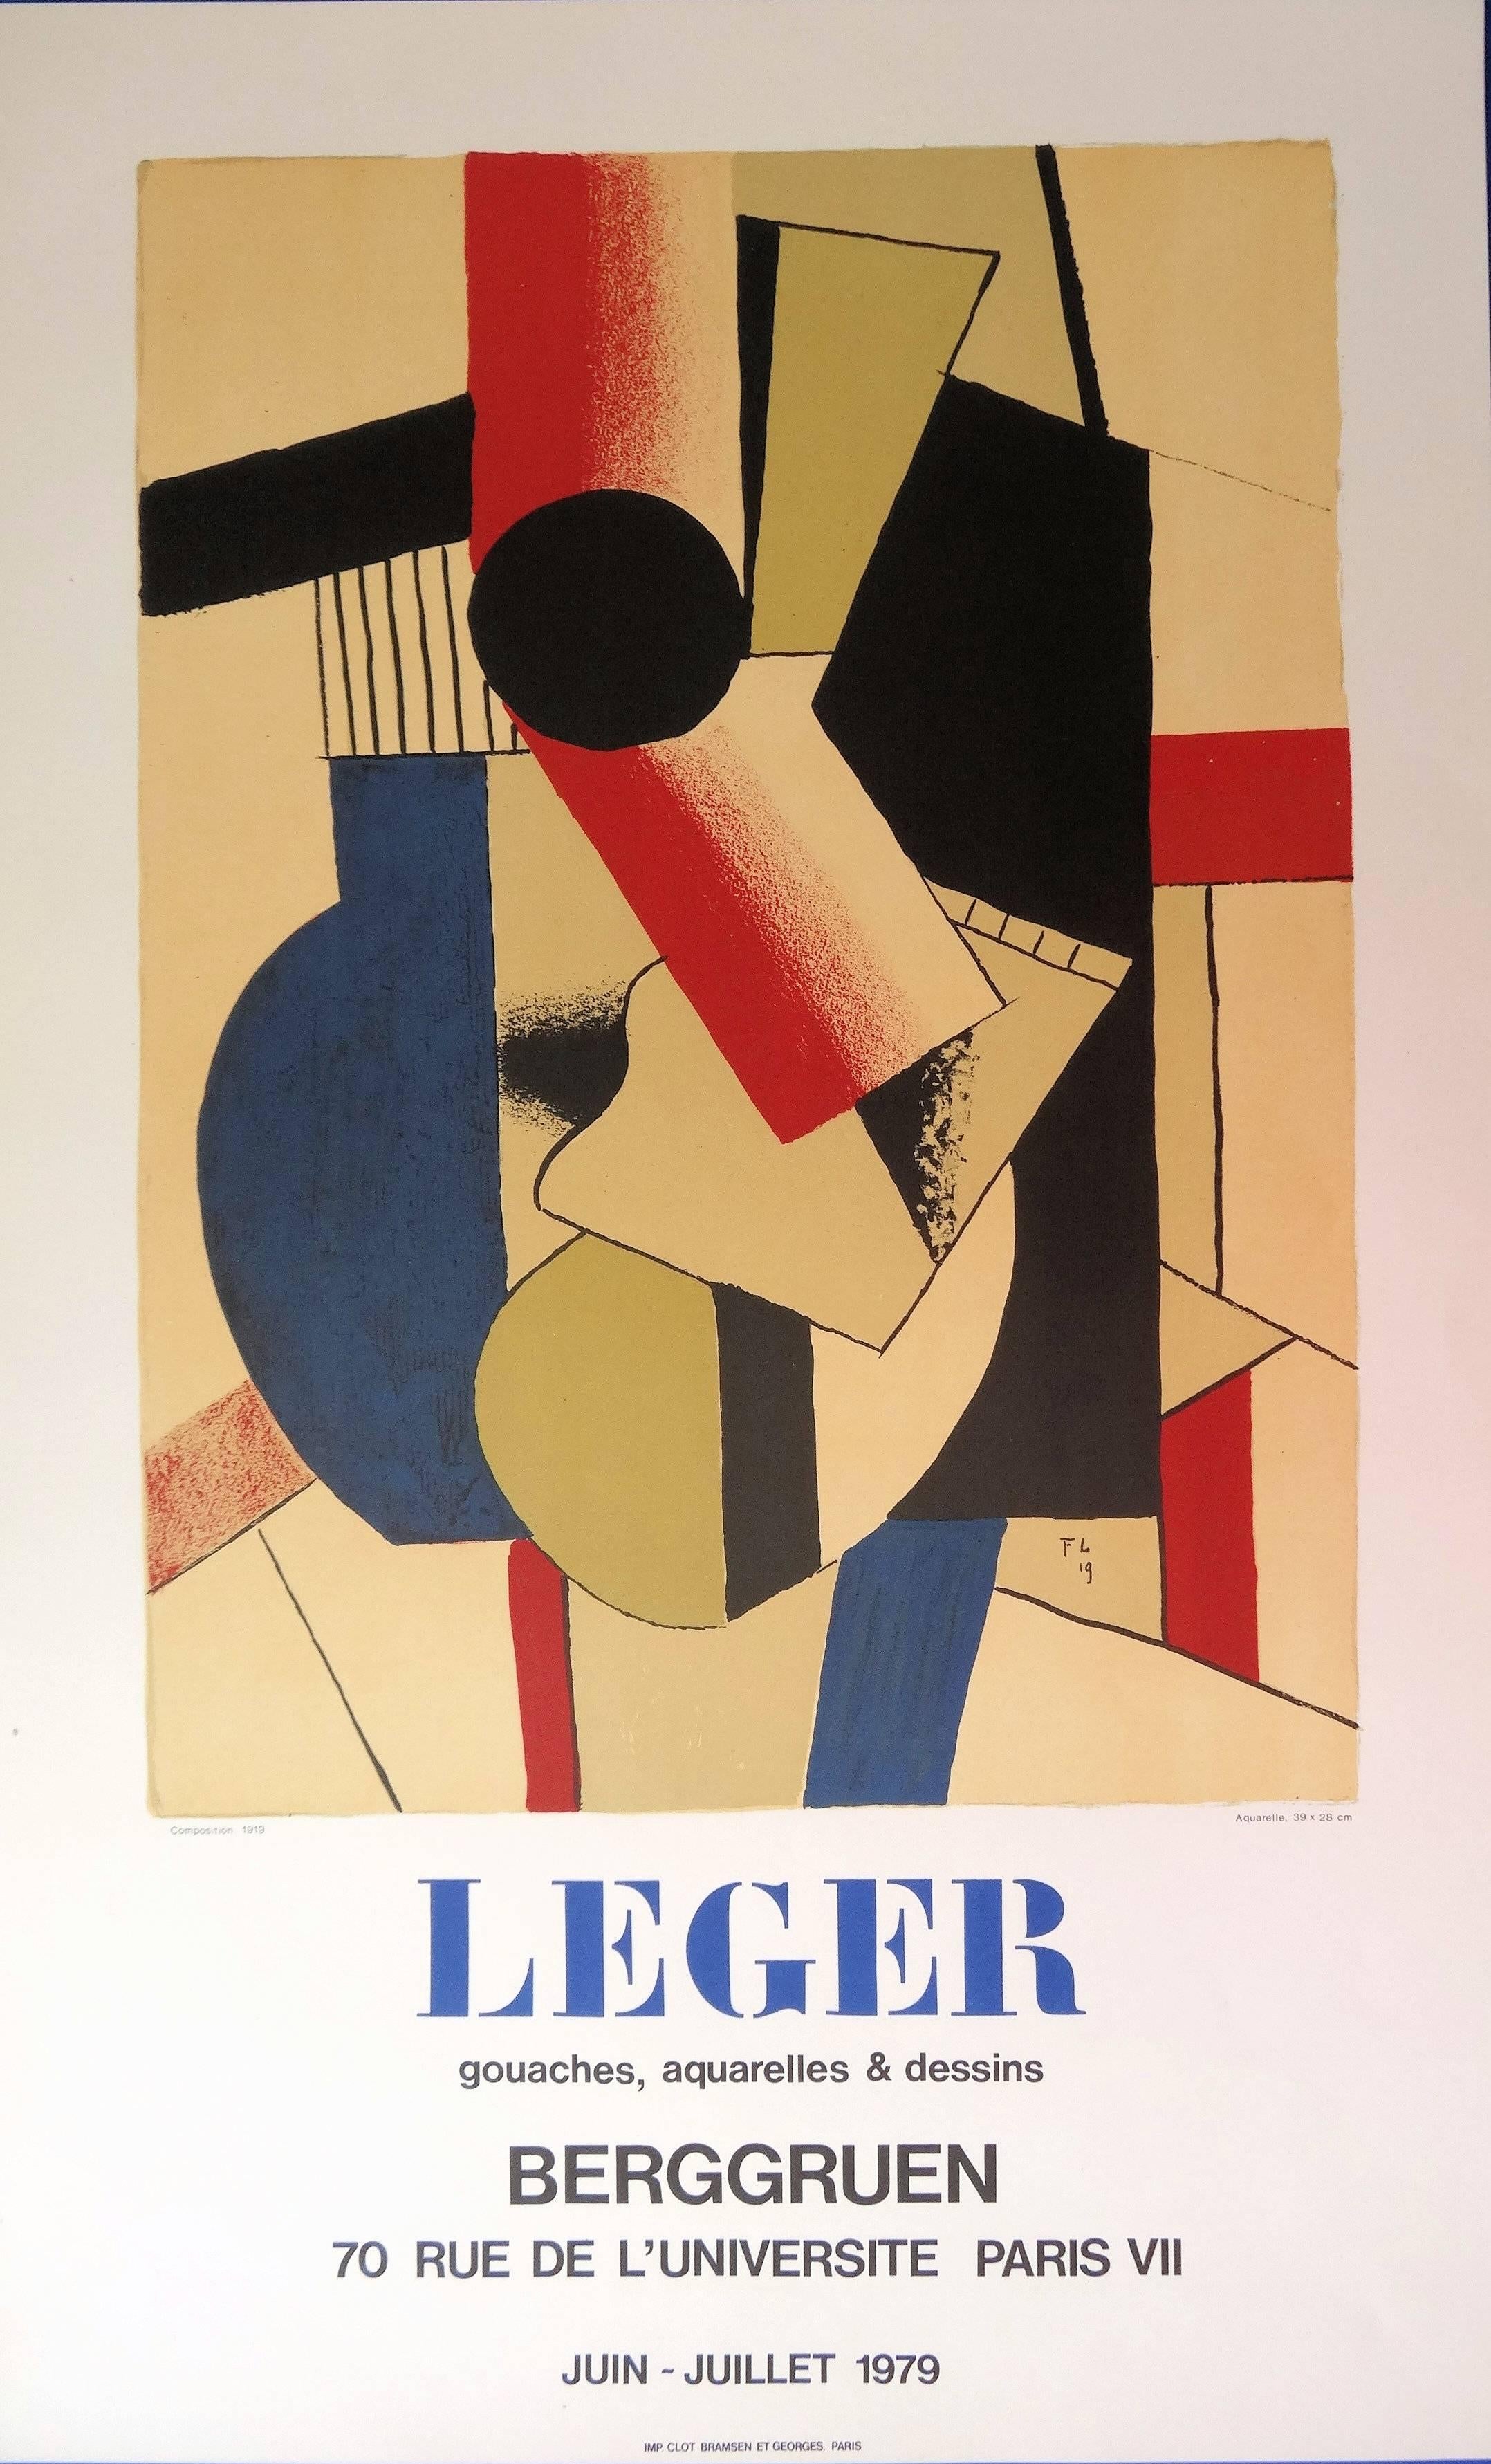 (after) Fernand Léger Abstract Print - Cubist Guitar - Lithograph poster - Berggruen / Mourlot 1979